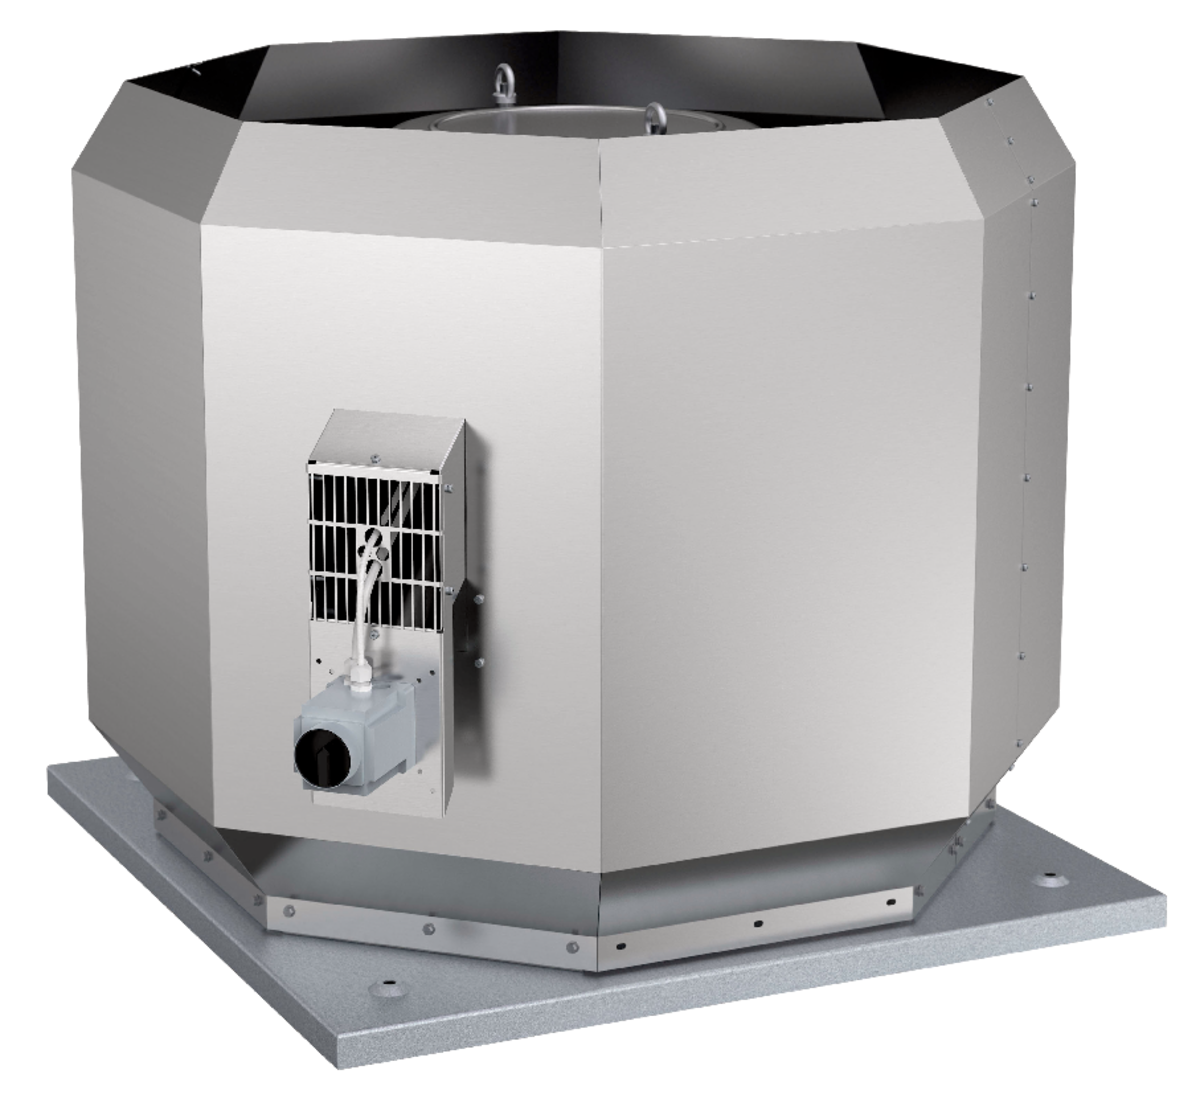 DVV - Tourelles - Ventilateurs (Ventilation et Traitement d’air) - Produits Ventilation & Traitement d’air - Systemair